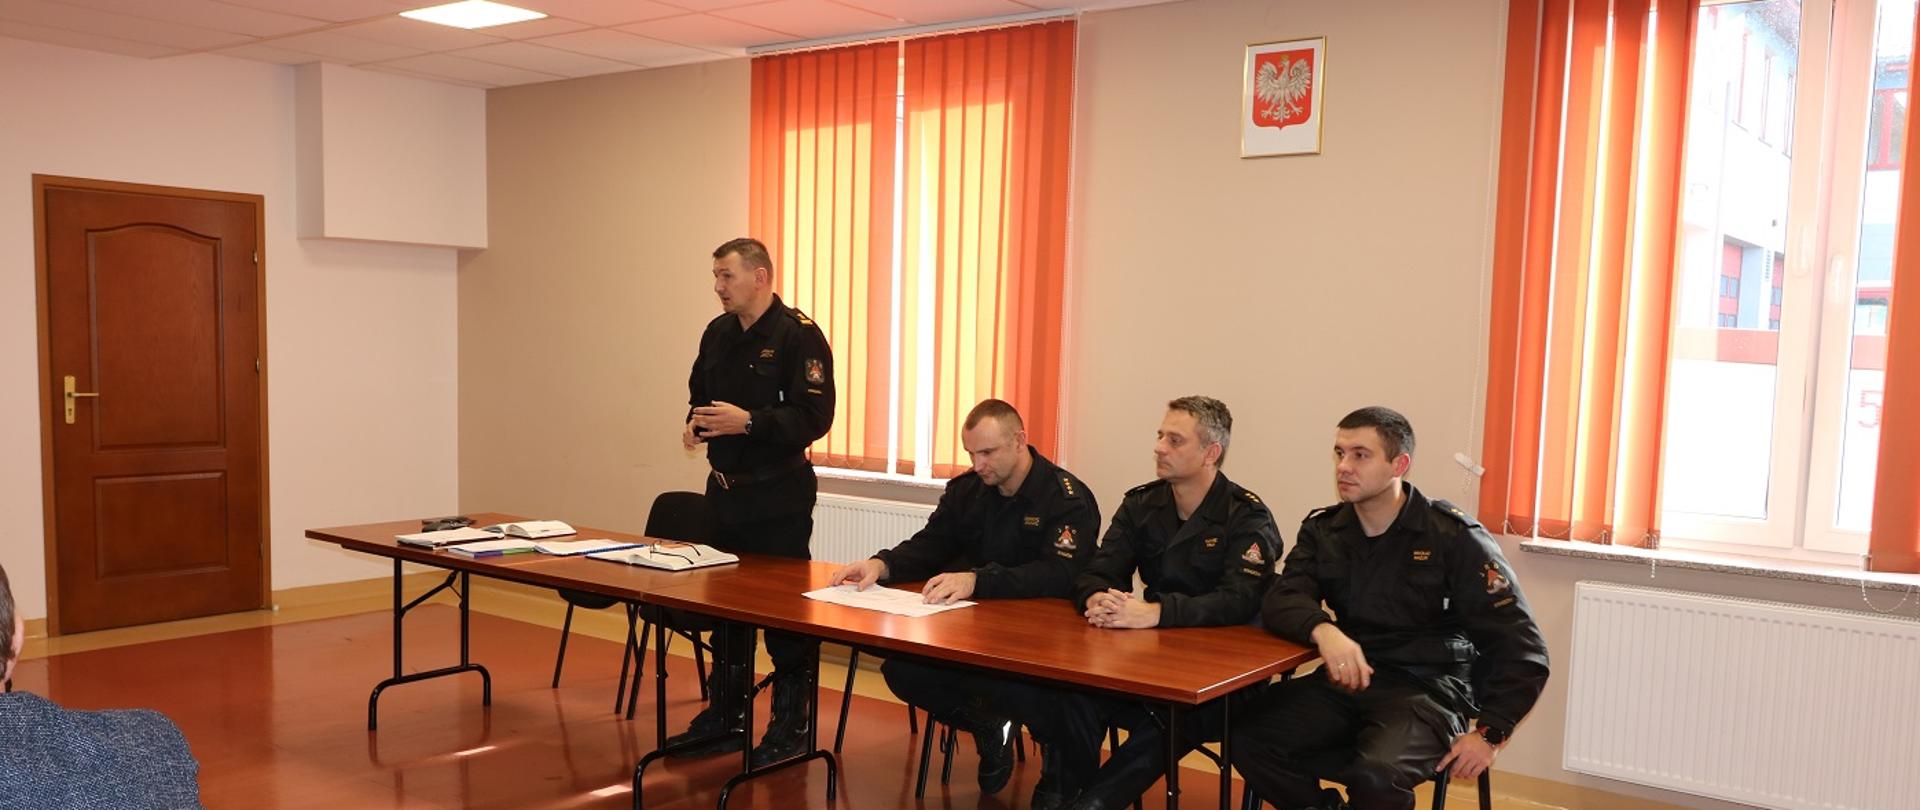 Spotkanie z kierownictwem jednostek OSP z terenu powiatu staszowskiego oraz pracownikami Urzędów Miast i Gmin oraz Urzędów Gmin prowadzących sprawy ochrony przeciwpożarowej